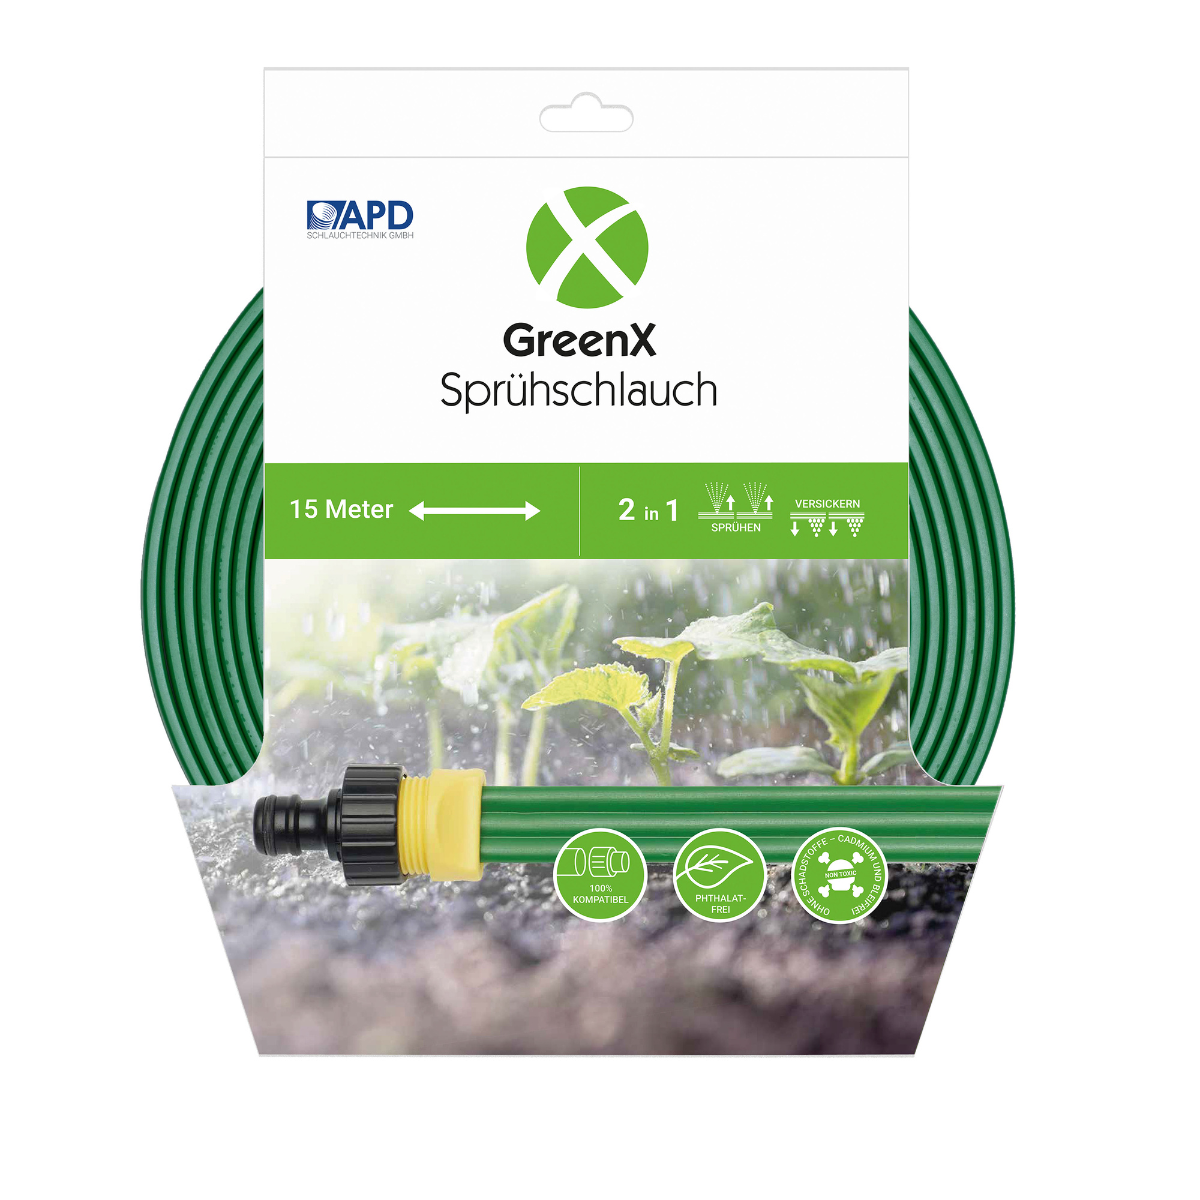 GreenX Sprühschlauch